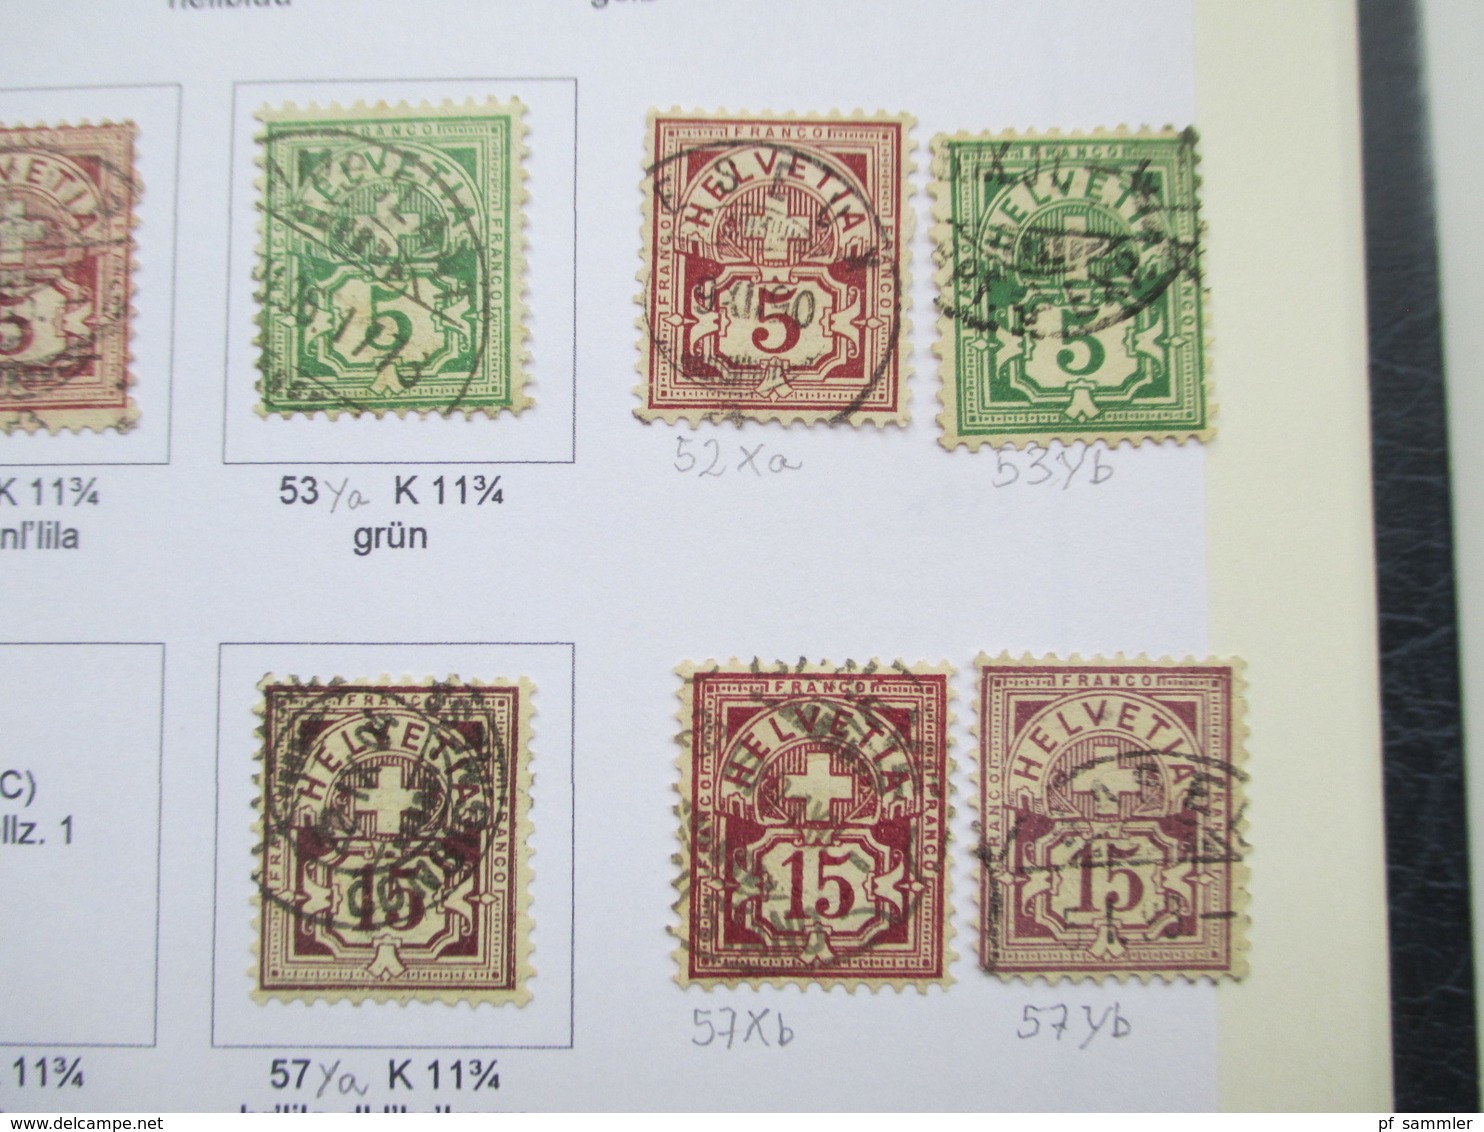 Schweiz Sammlung ab 1862 - 1999 gestempelt / vereinzelt * Angangs auch mit Farben / Typen! Saubere Stempel!!